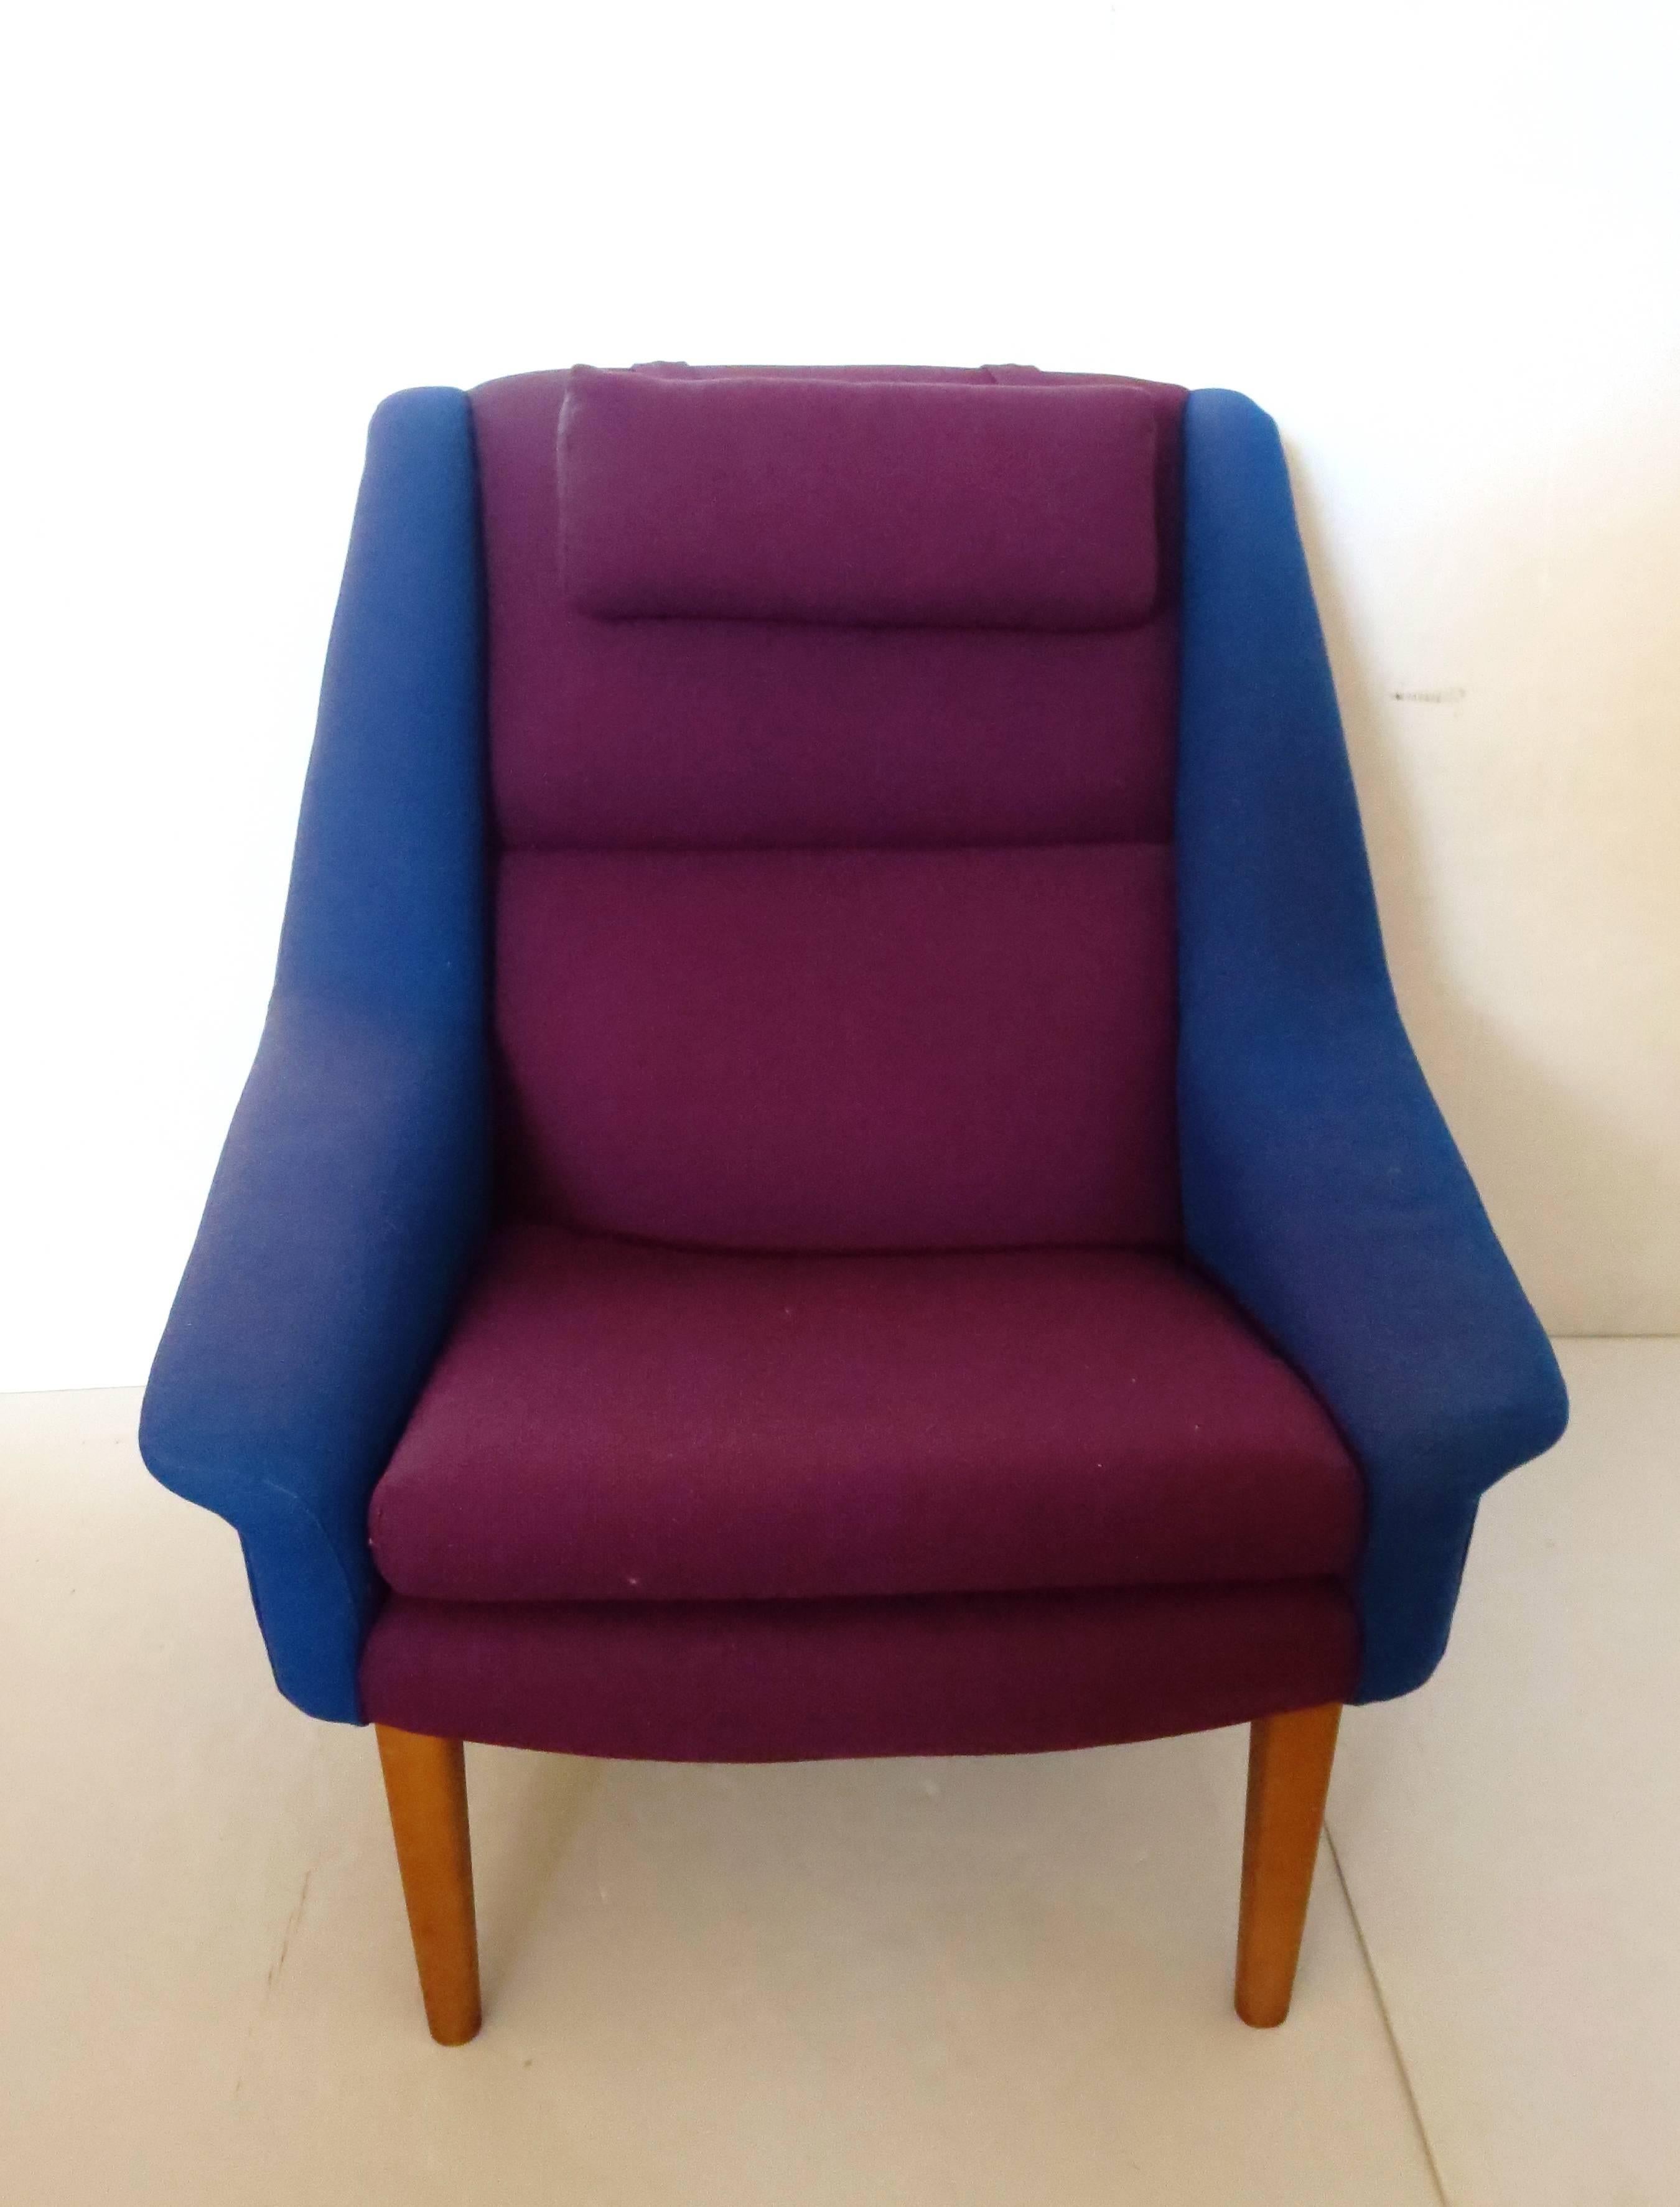 Rare Original Upholstery Lounge Chair by Folke Ohlsson for Fritz Hansen 3